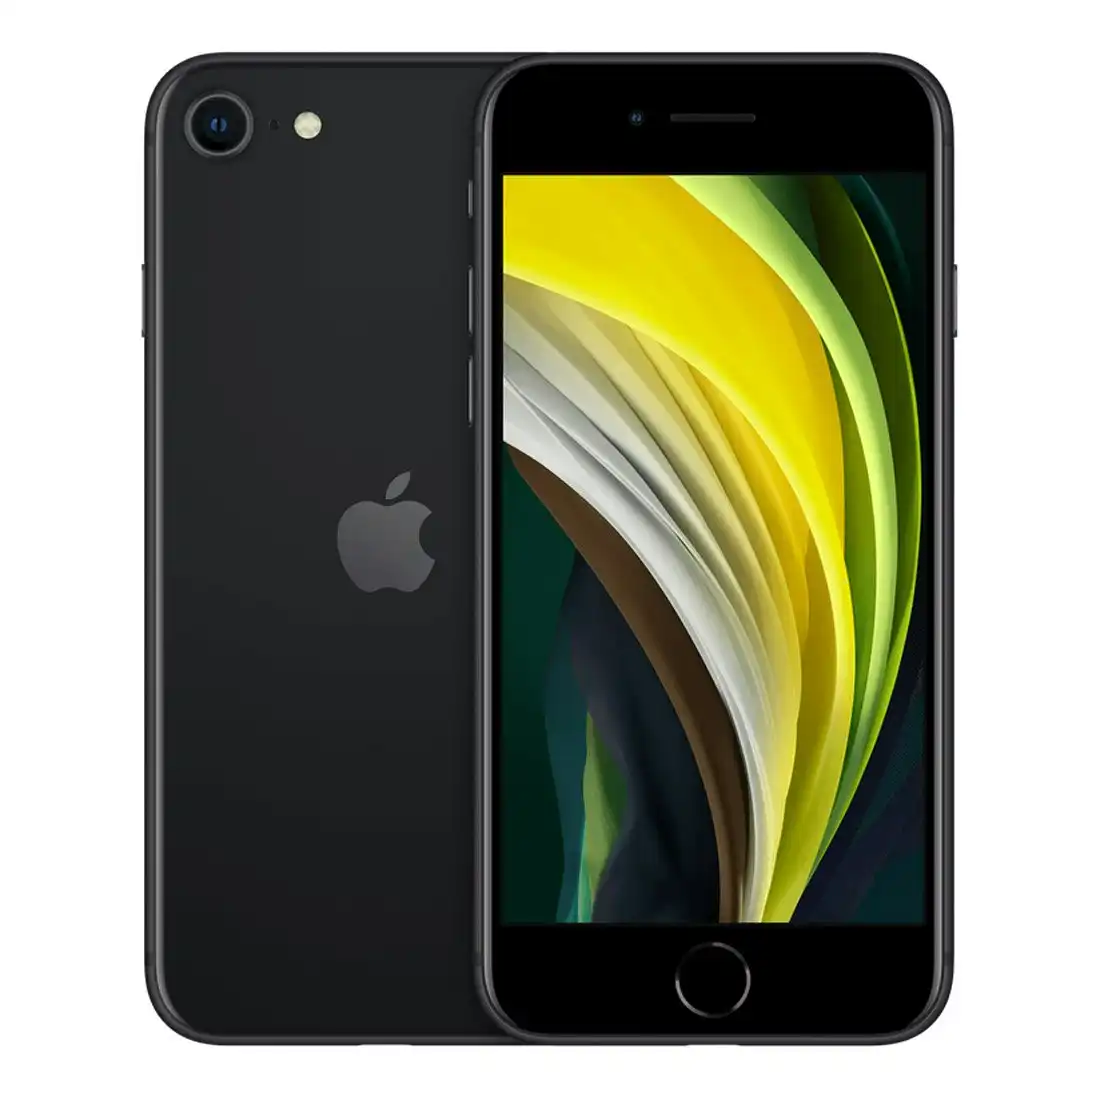 Apple iPhone SE (2nd Gen) 64GB Black [Refurbished] - Excellent